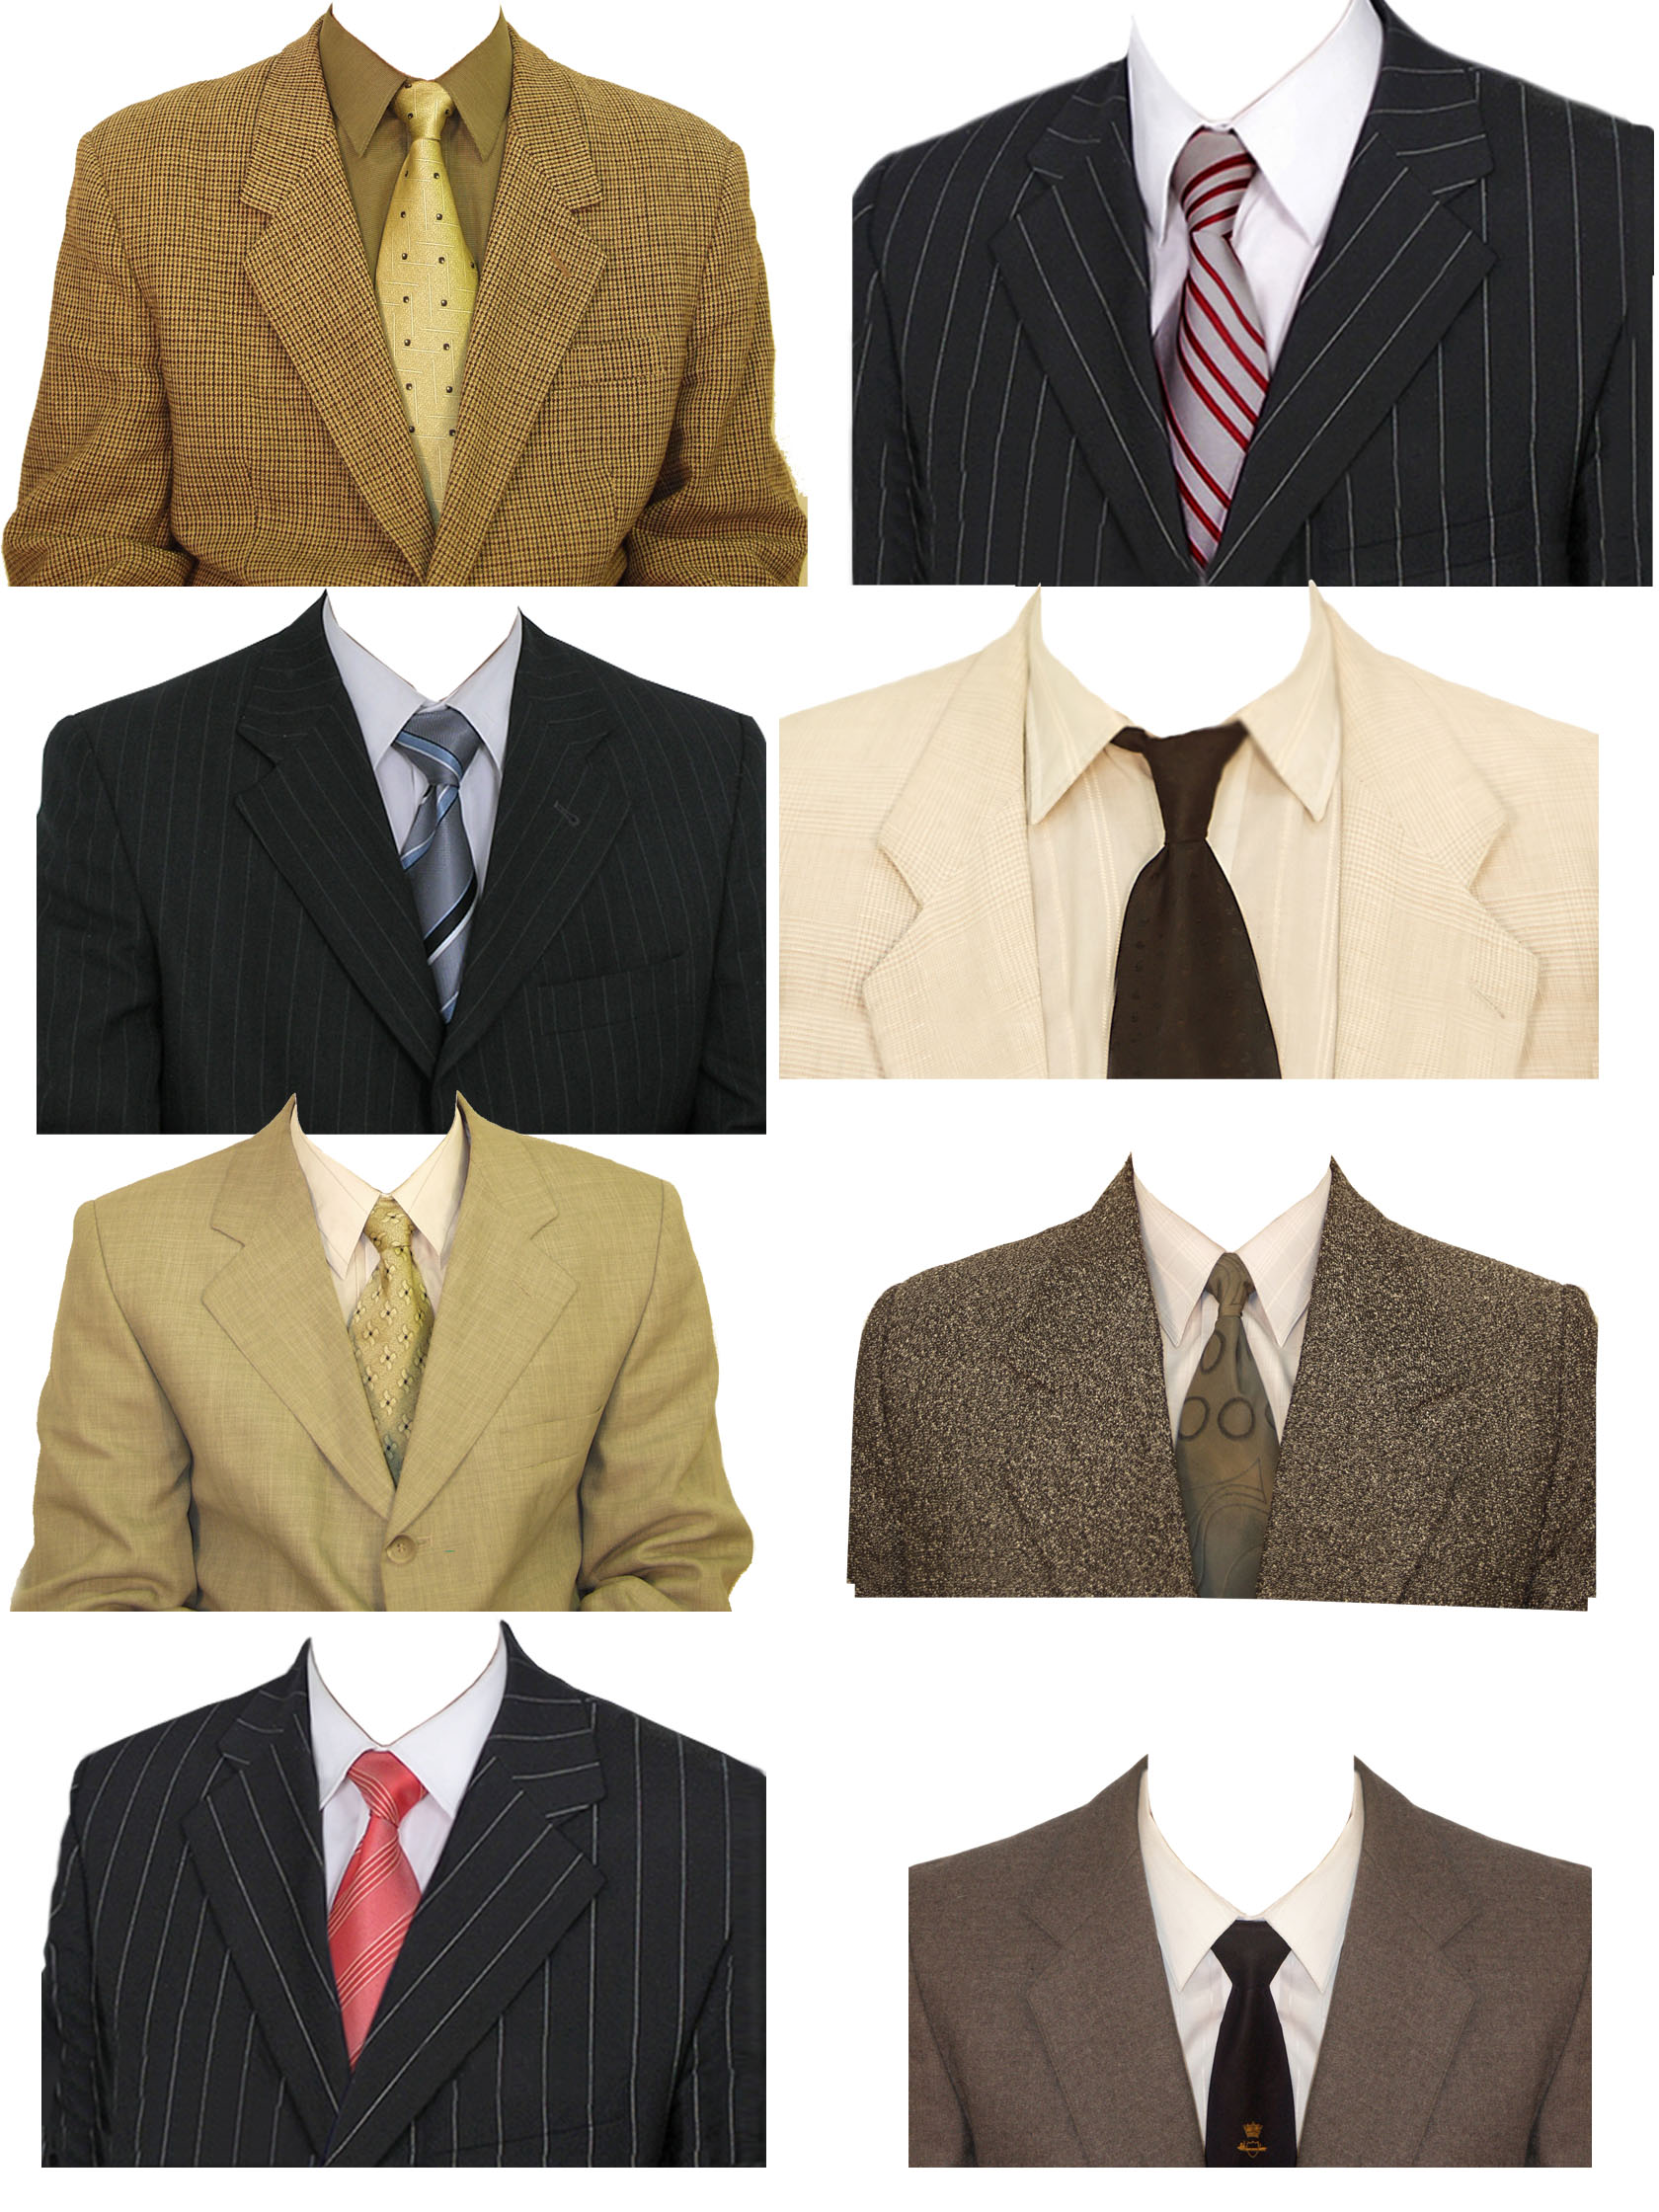 8 maillots de photo d'identité de costumes masculins